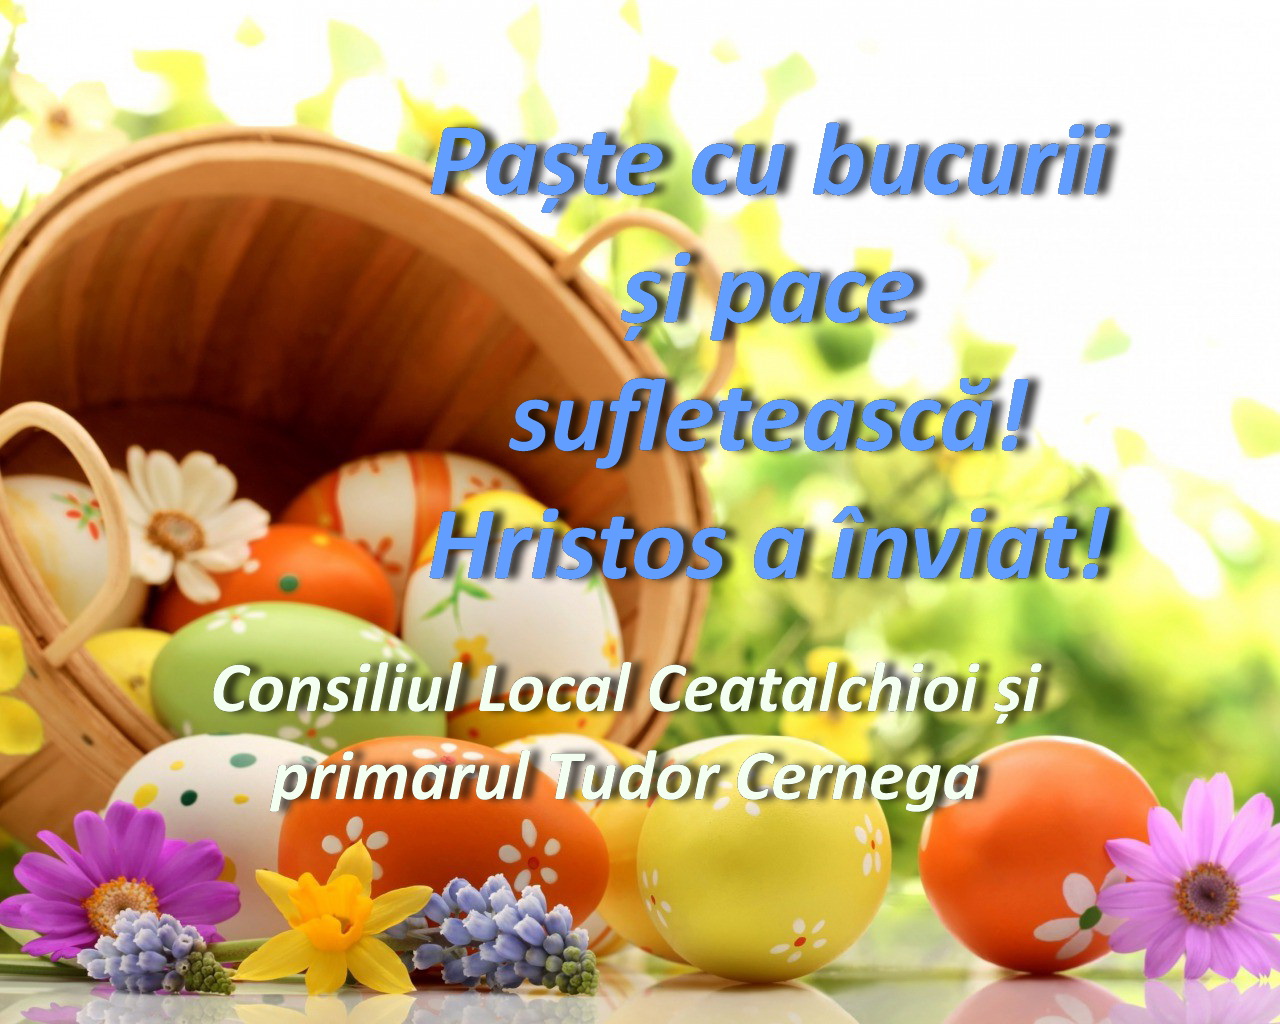 Consiliul Local Ceatalchioi și primarul Tudor Cernega vă urează Paște fericit!